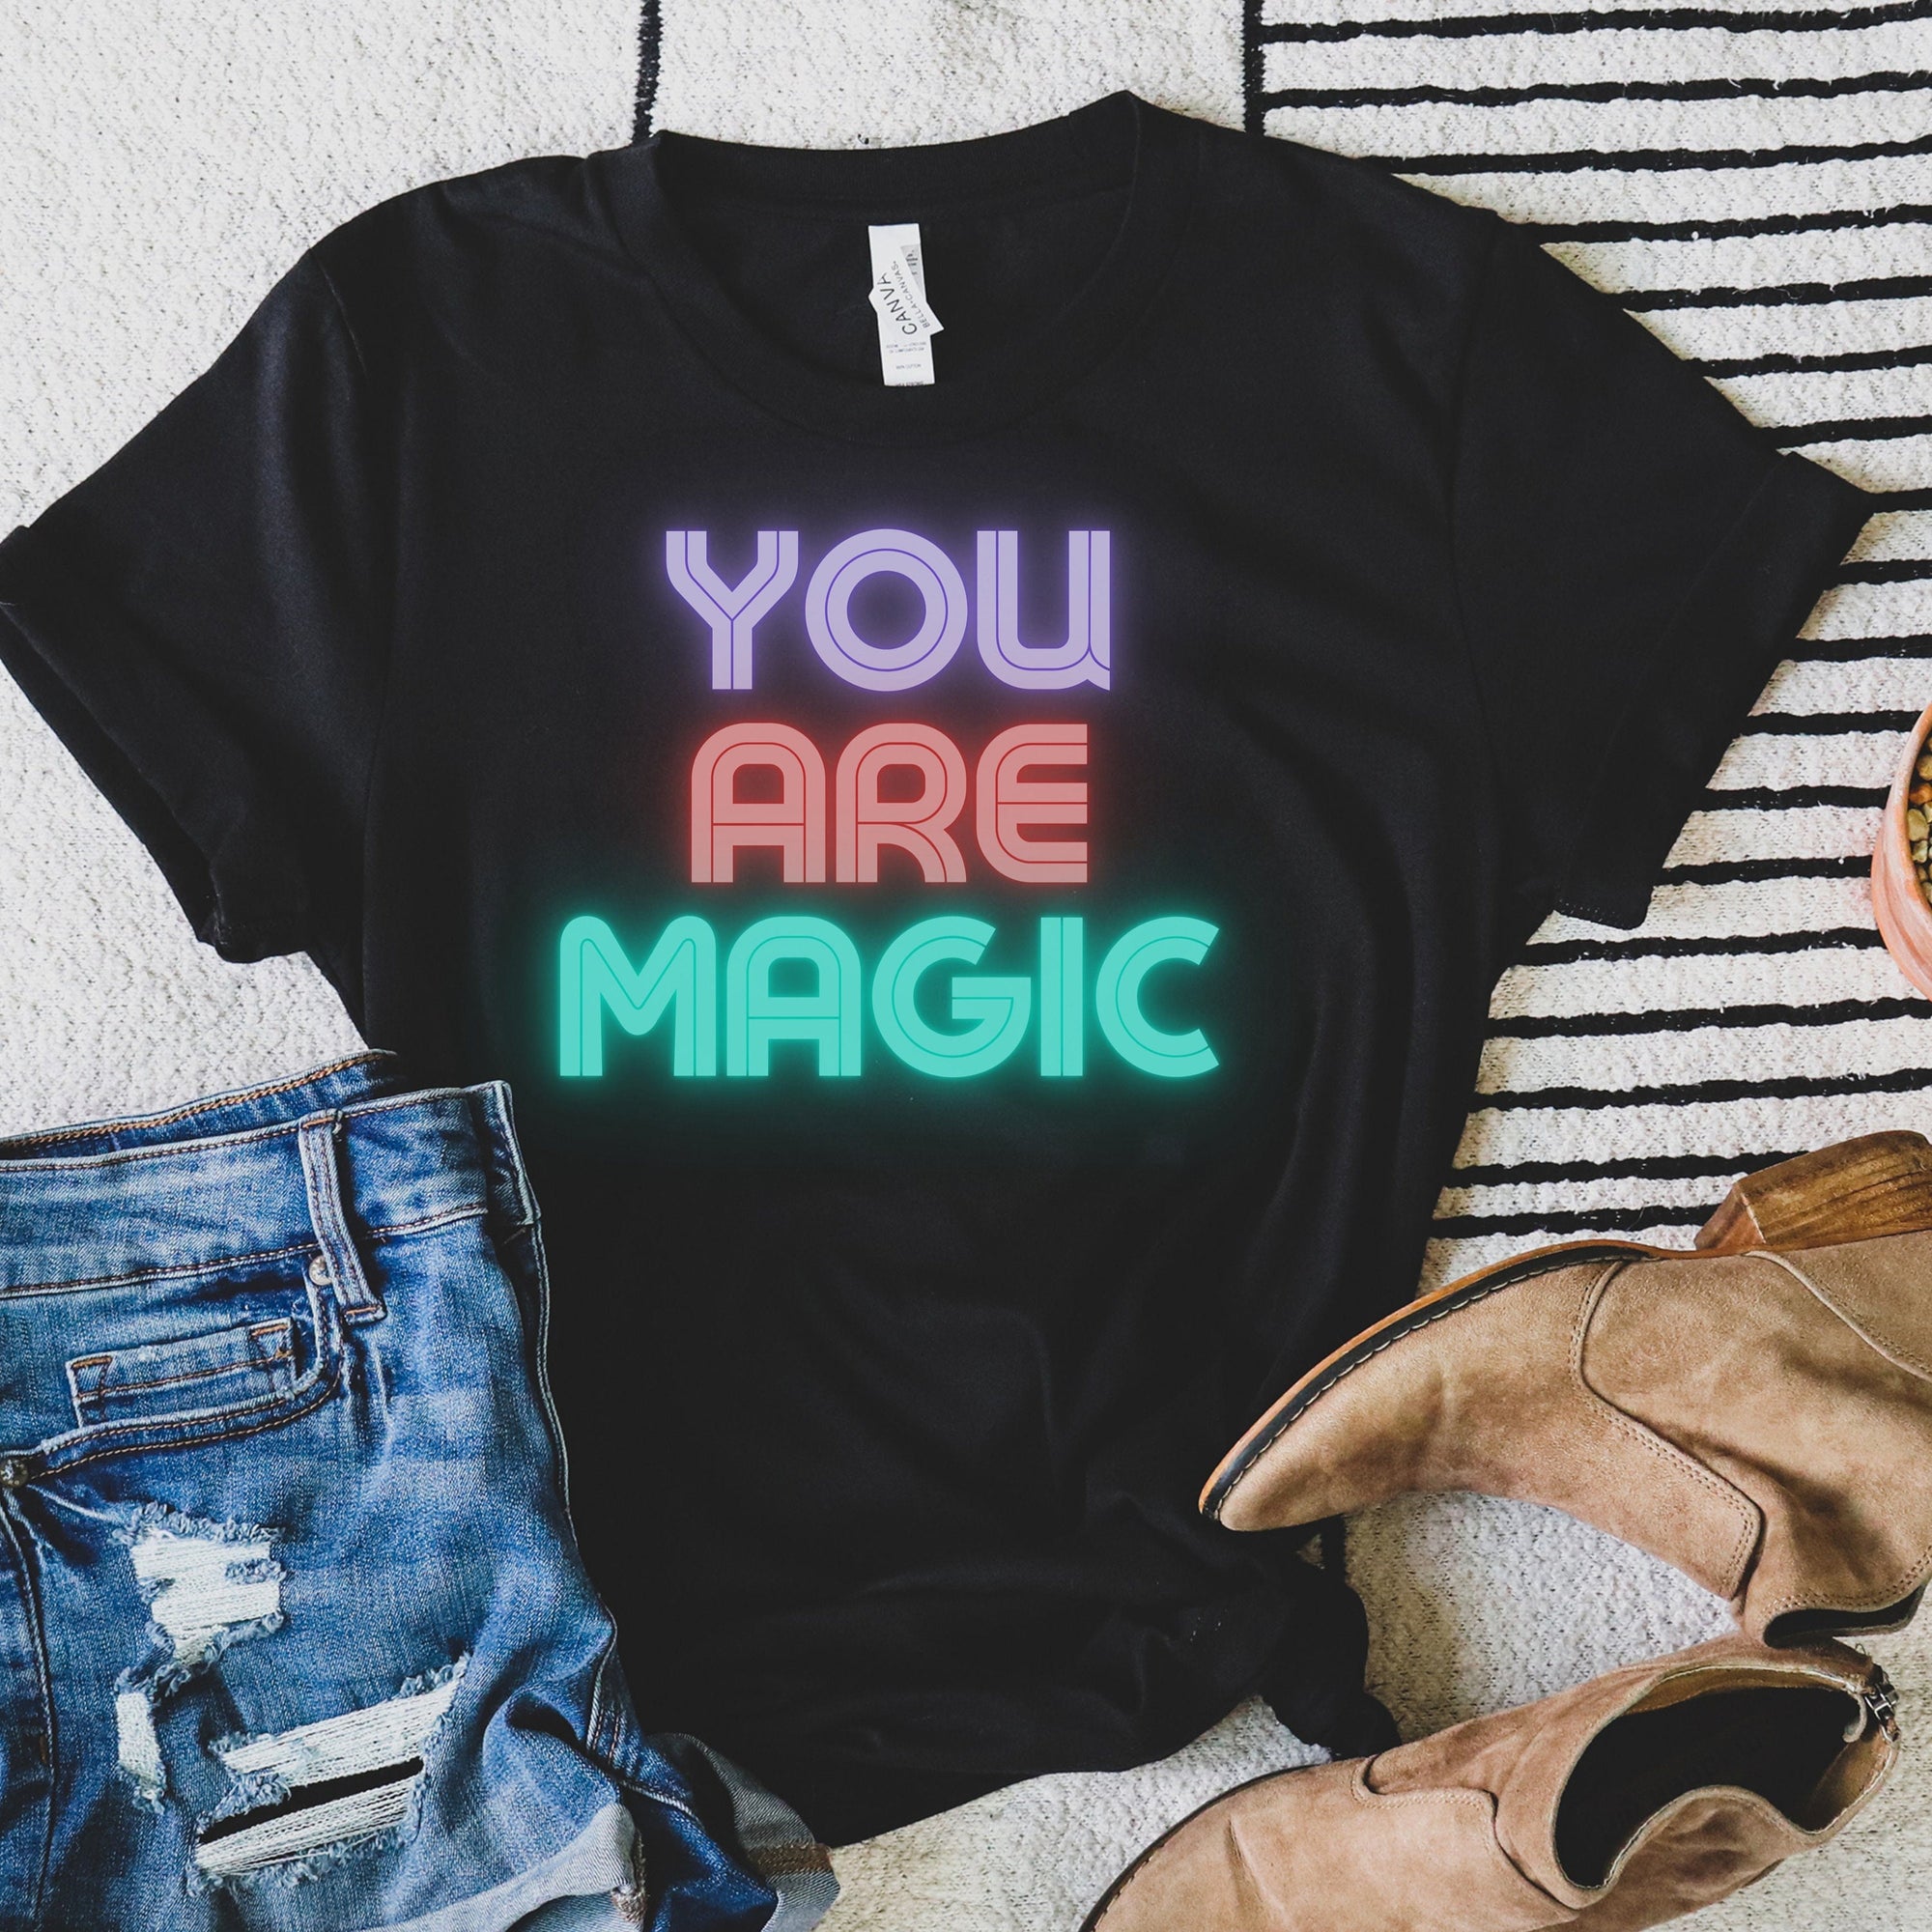 You are Magic shirt you are magical spiritual tshirt, empowerment tshirt, feminist tshirt inspirational tshirt yoga tee, faith tshirt